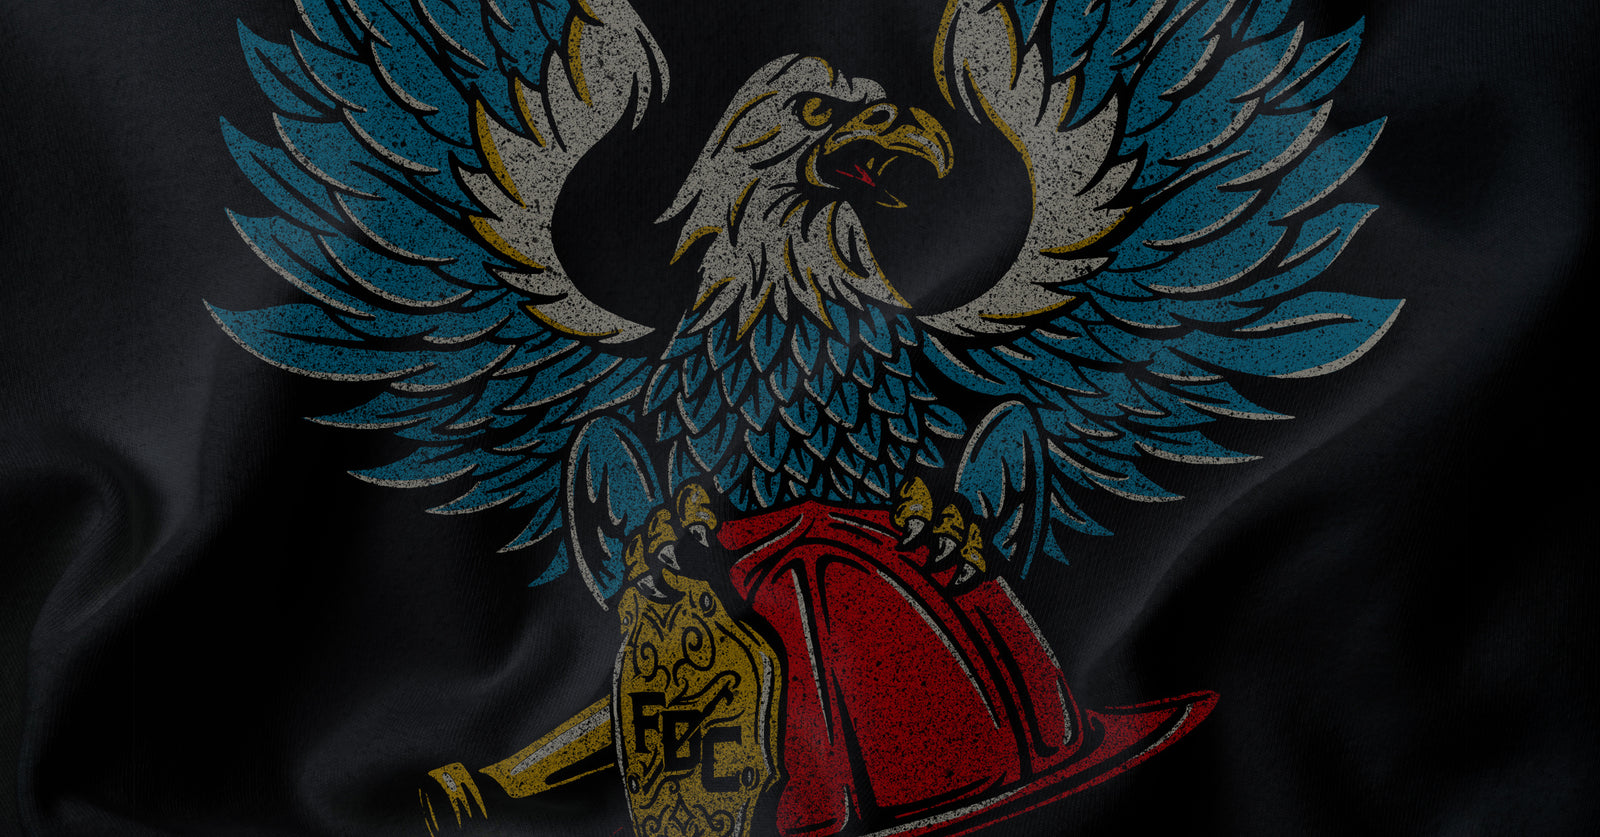 Bald eagle illustration on a black shirt.